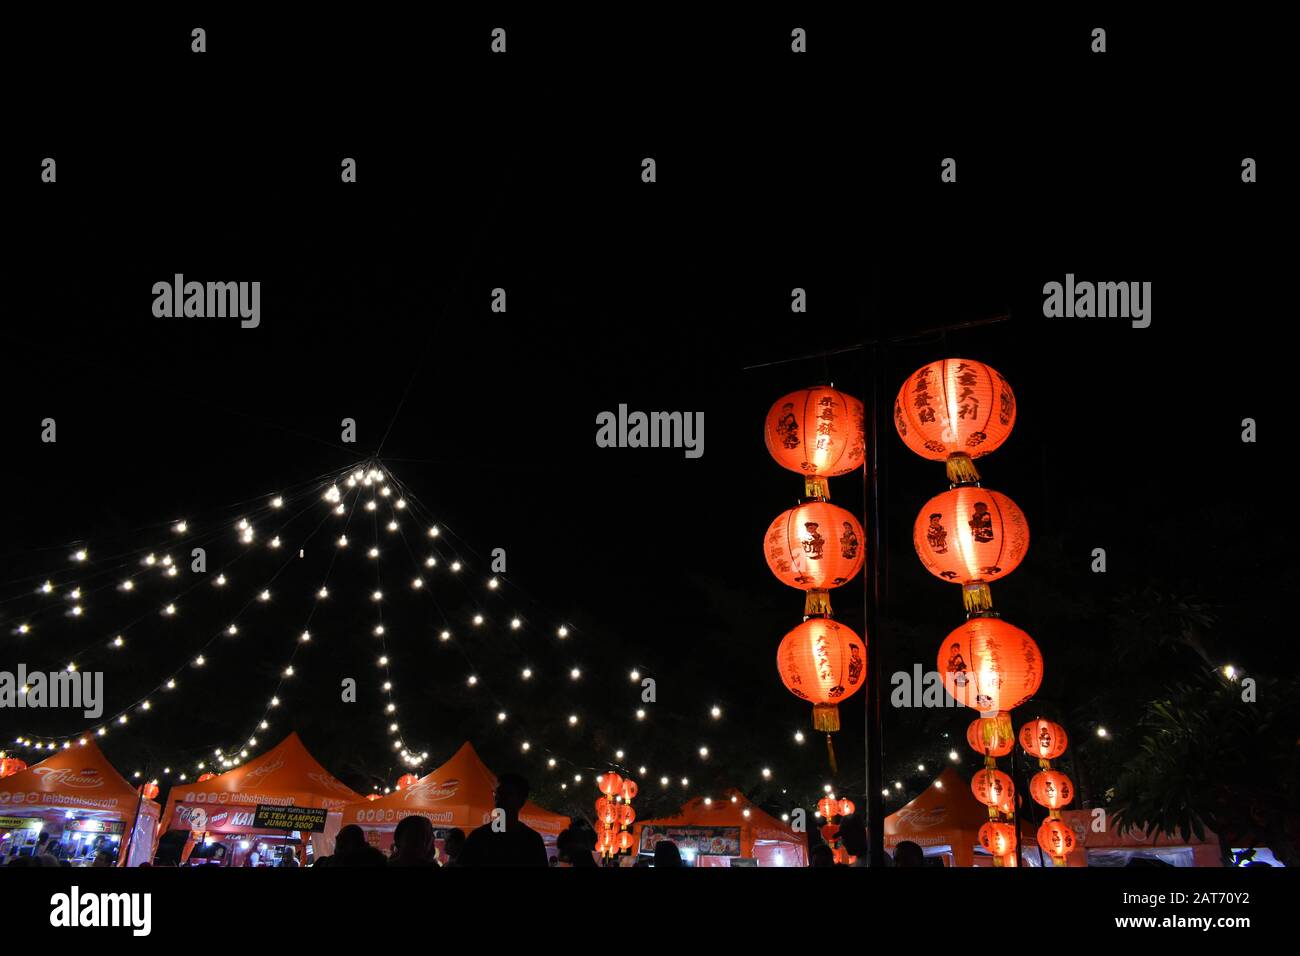 Lampion und Elektro-Glühbirne-Dekoration Teil des Food-Festivals während des chinesischen Neujahrsfestes im Einkaufszentrum. Surakarta, Indonesien. Stockfoto